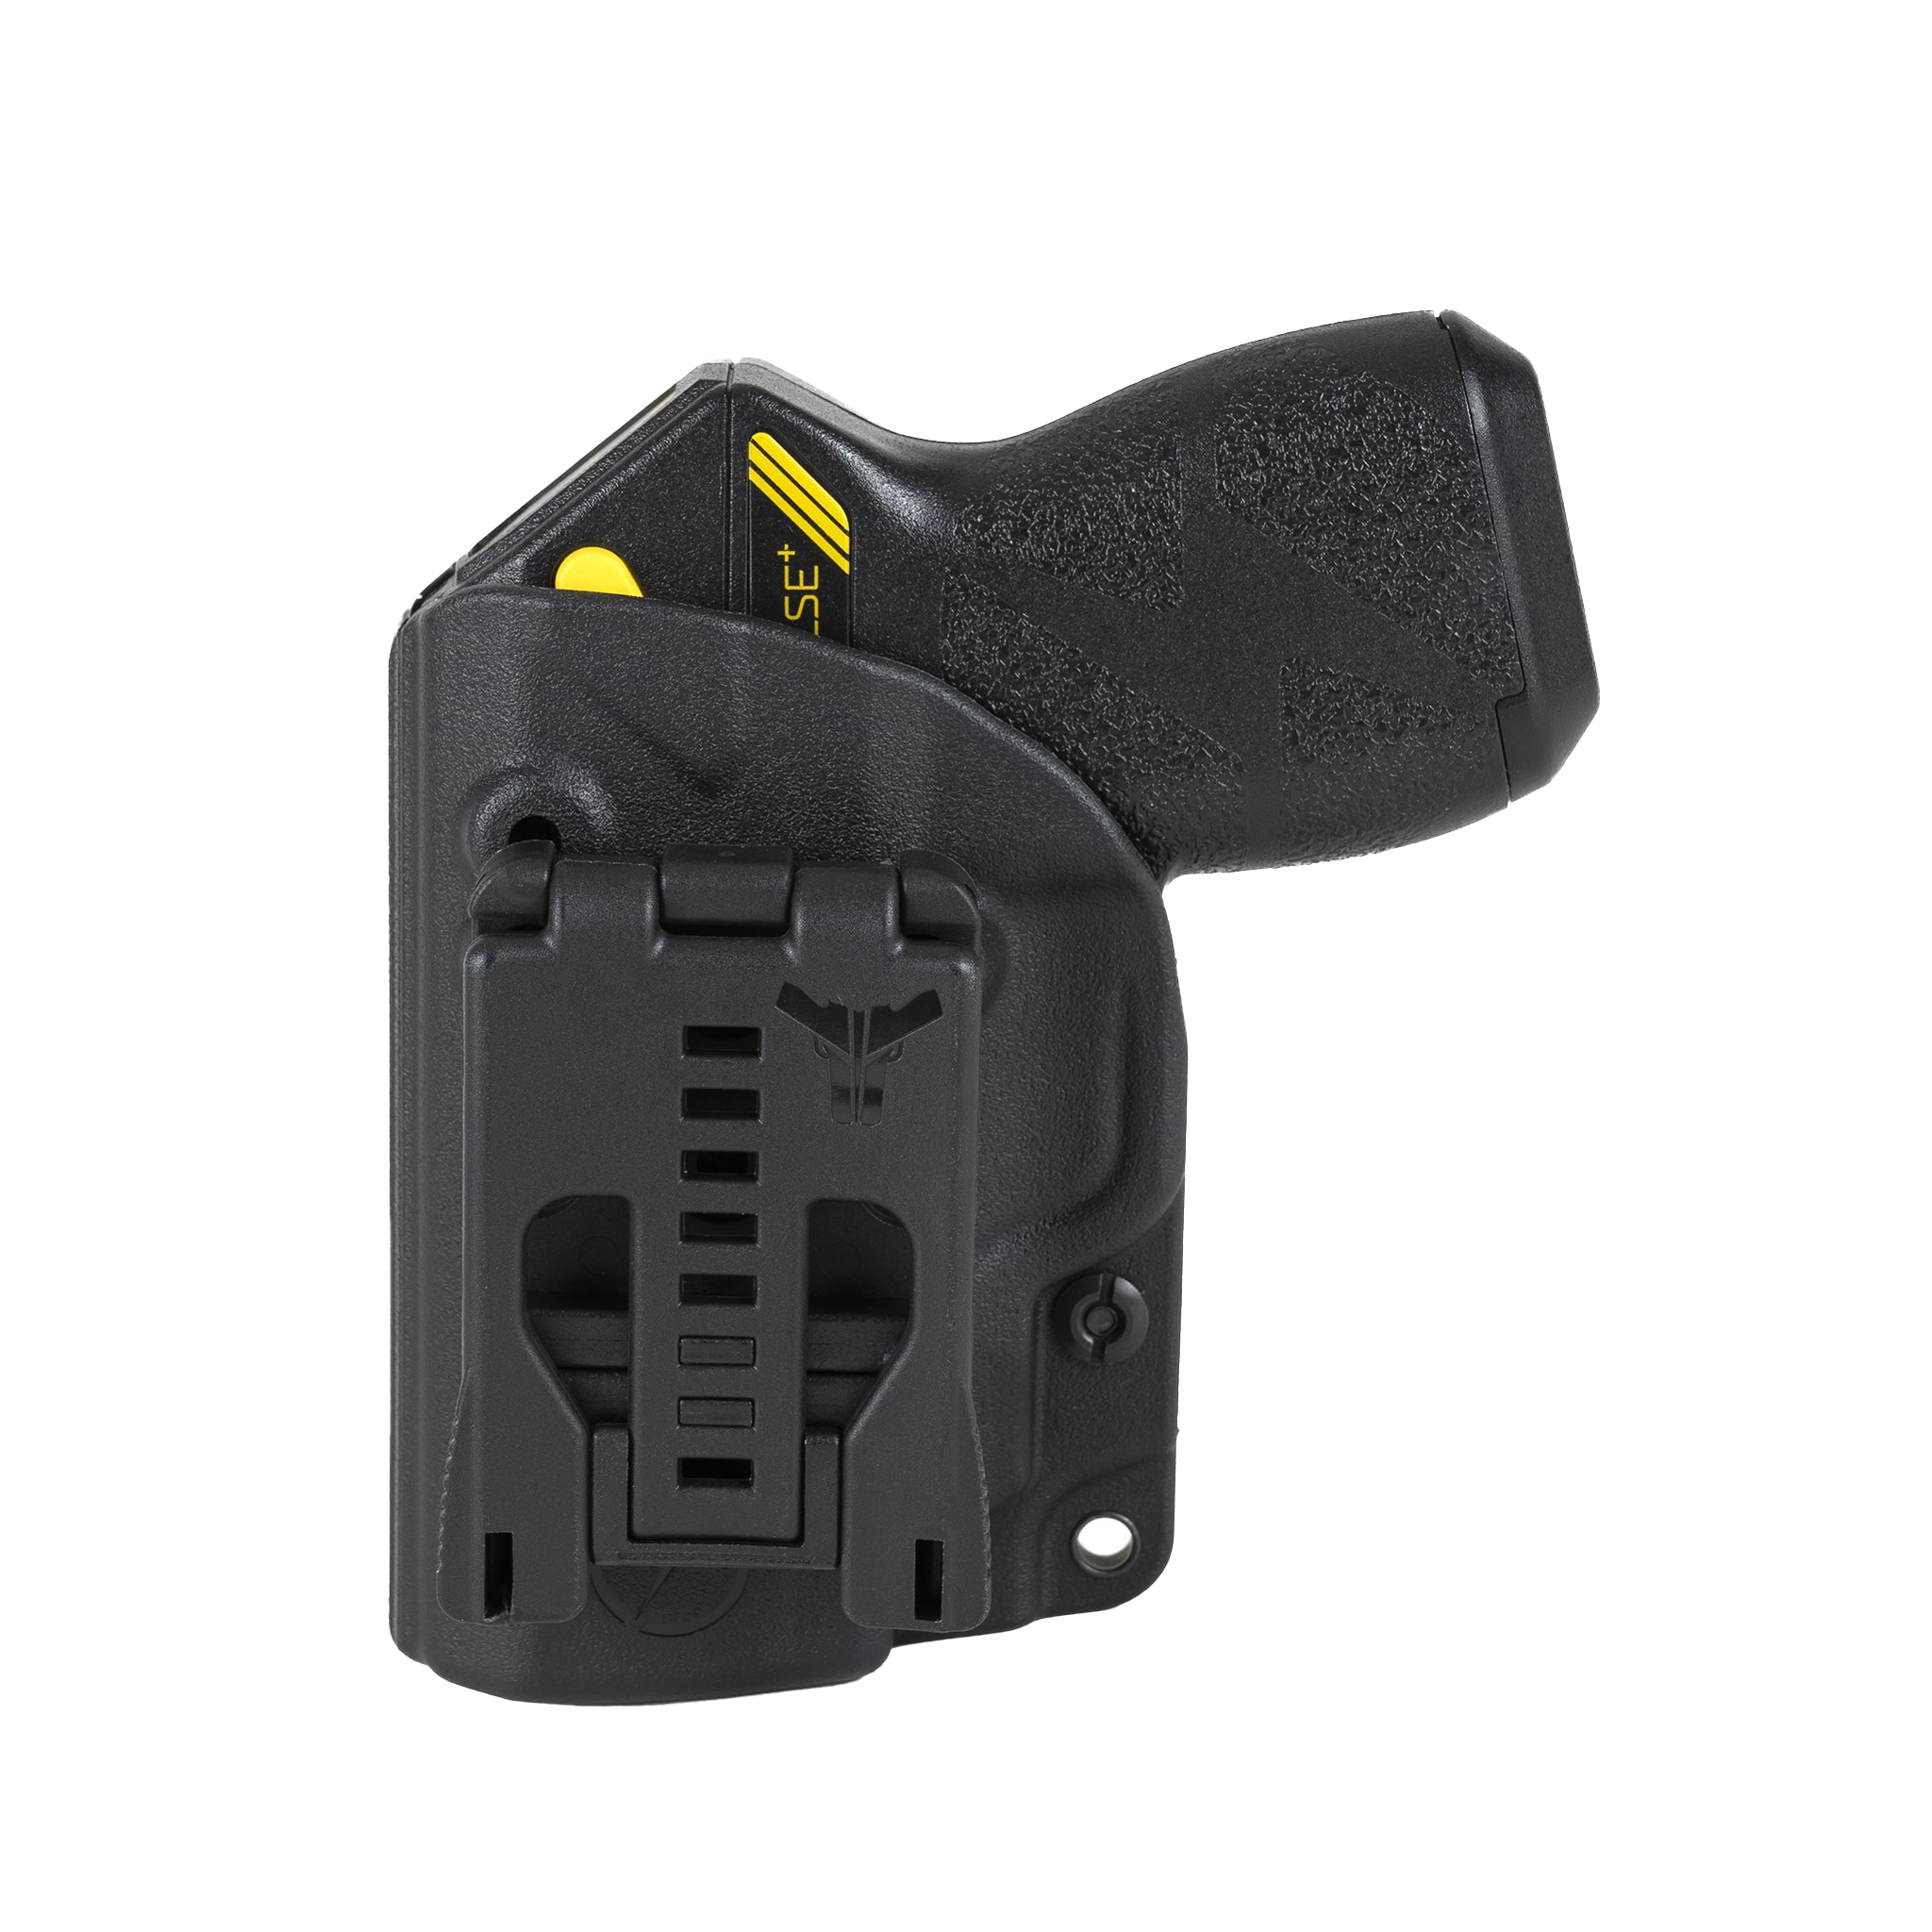 BLACK Conceal Carry Pocket OWB 39062 SOFT Holster Case Fits Taser Pulse Plus 